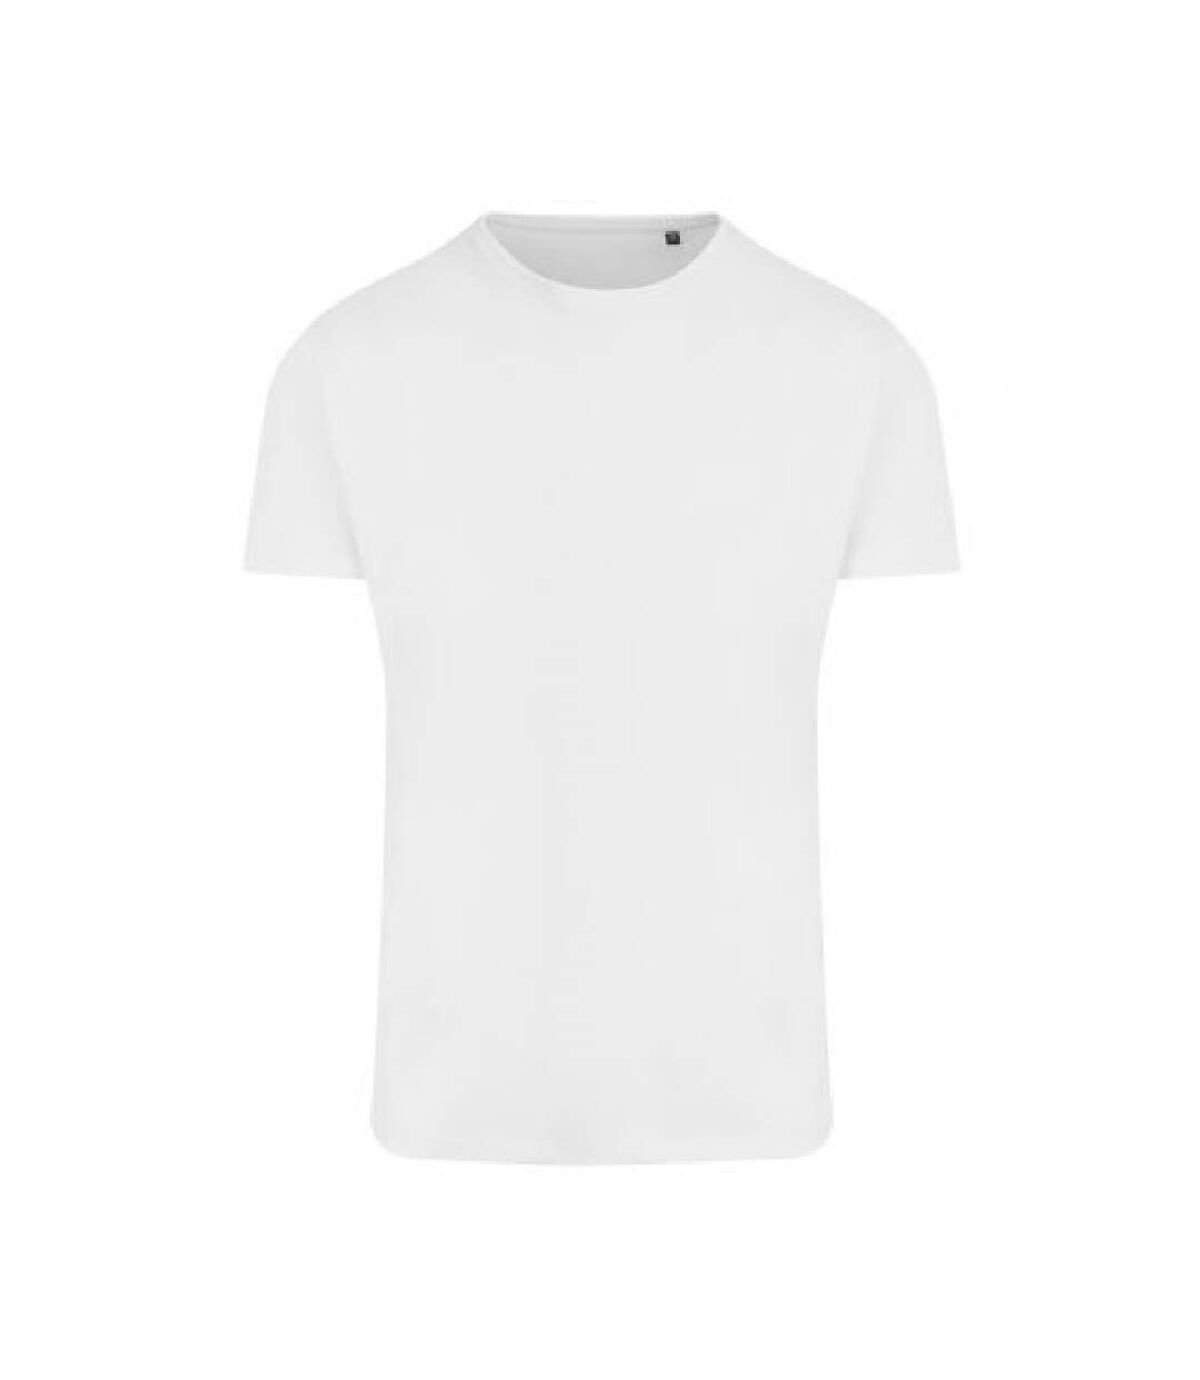 Ecologie Mens Ambaro Recycled Sports T-Shirt (Arctic White) - UTPC4088